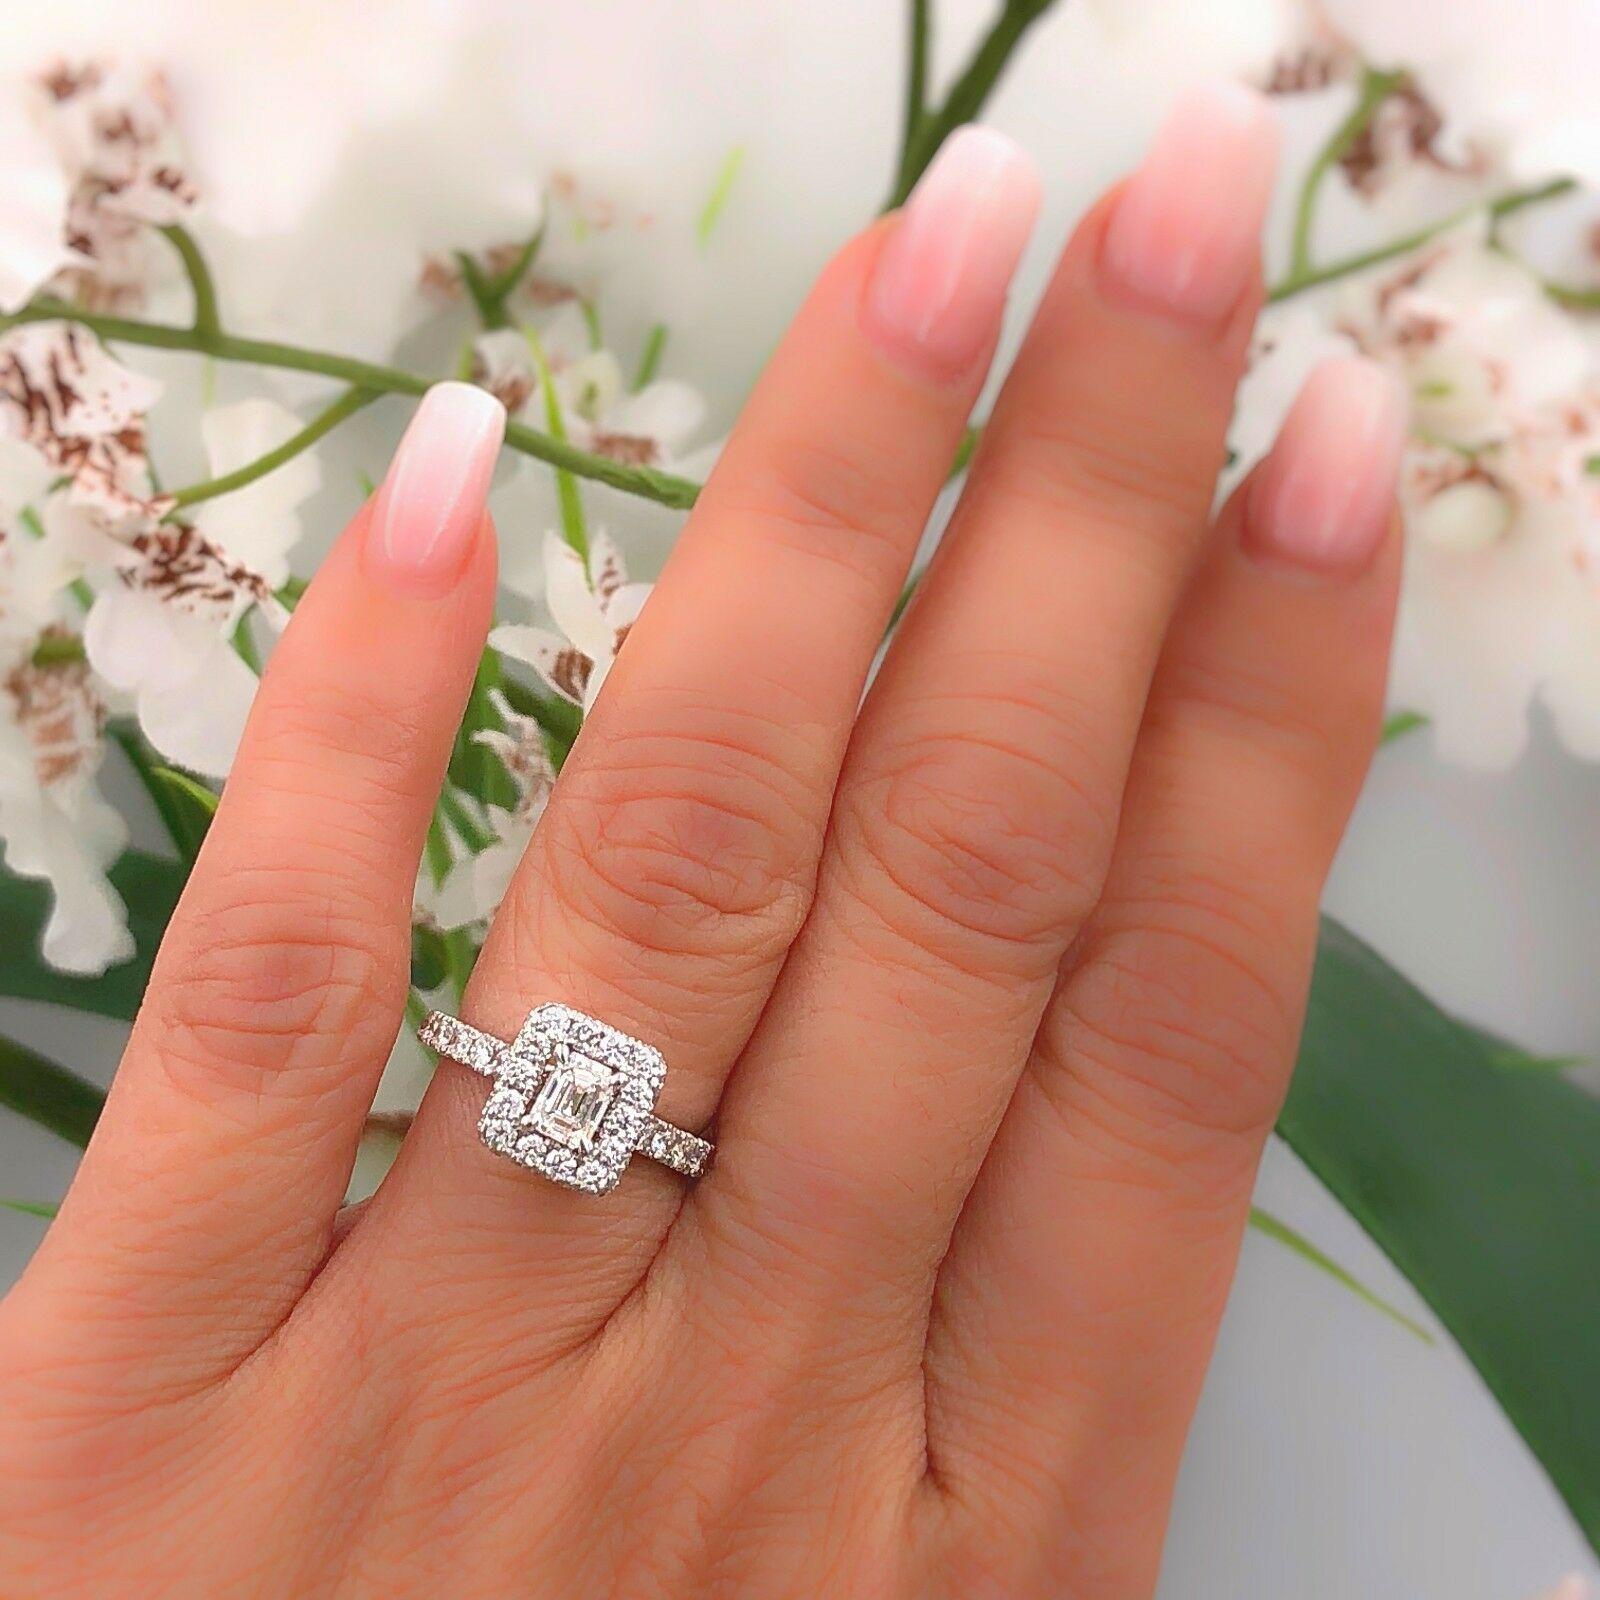 Neil Lane Diamond Engagement Ring Emerald Cut 1 1/2 Carat SI1 14 Karat Gold 3